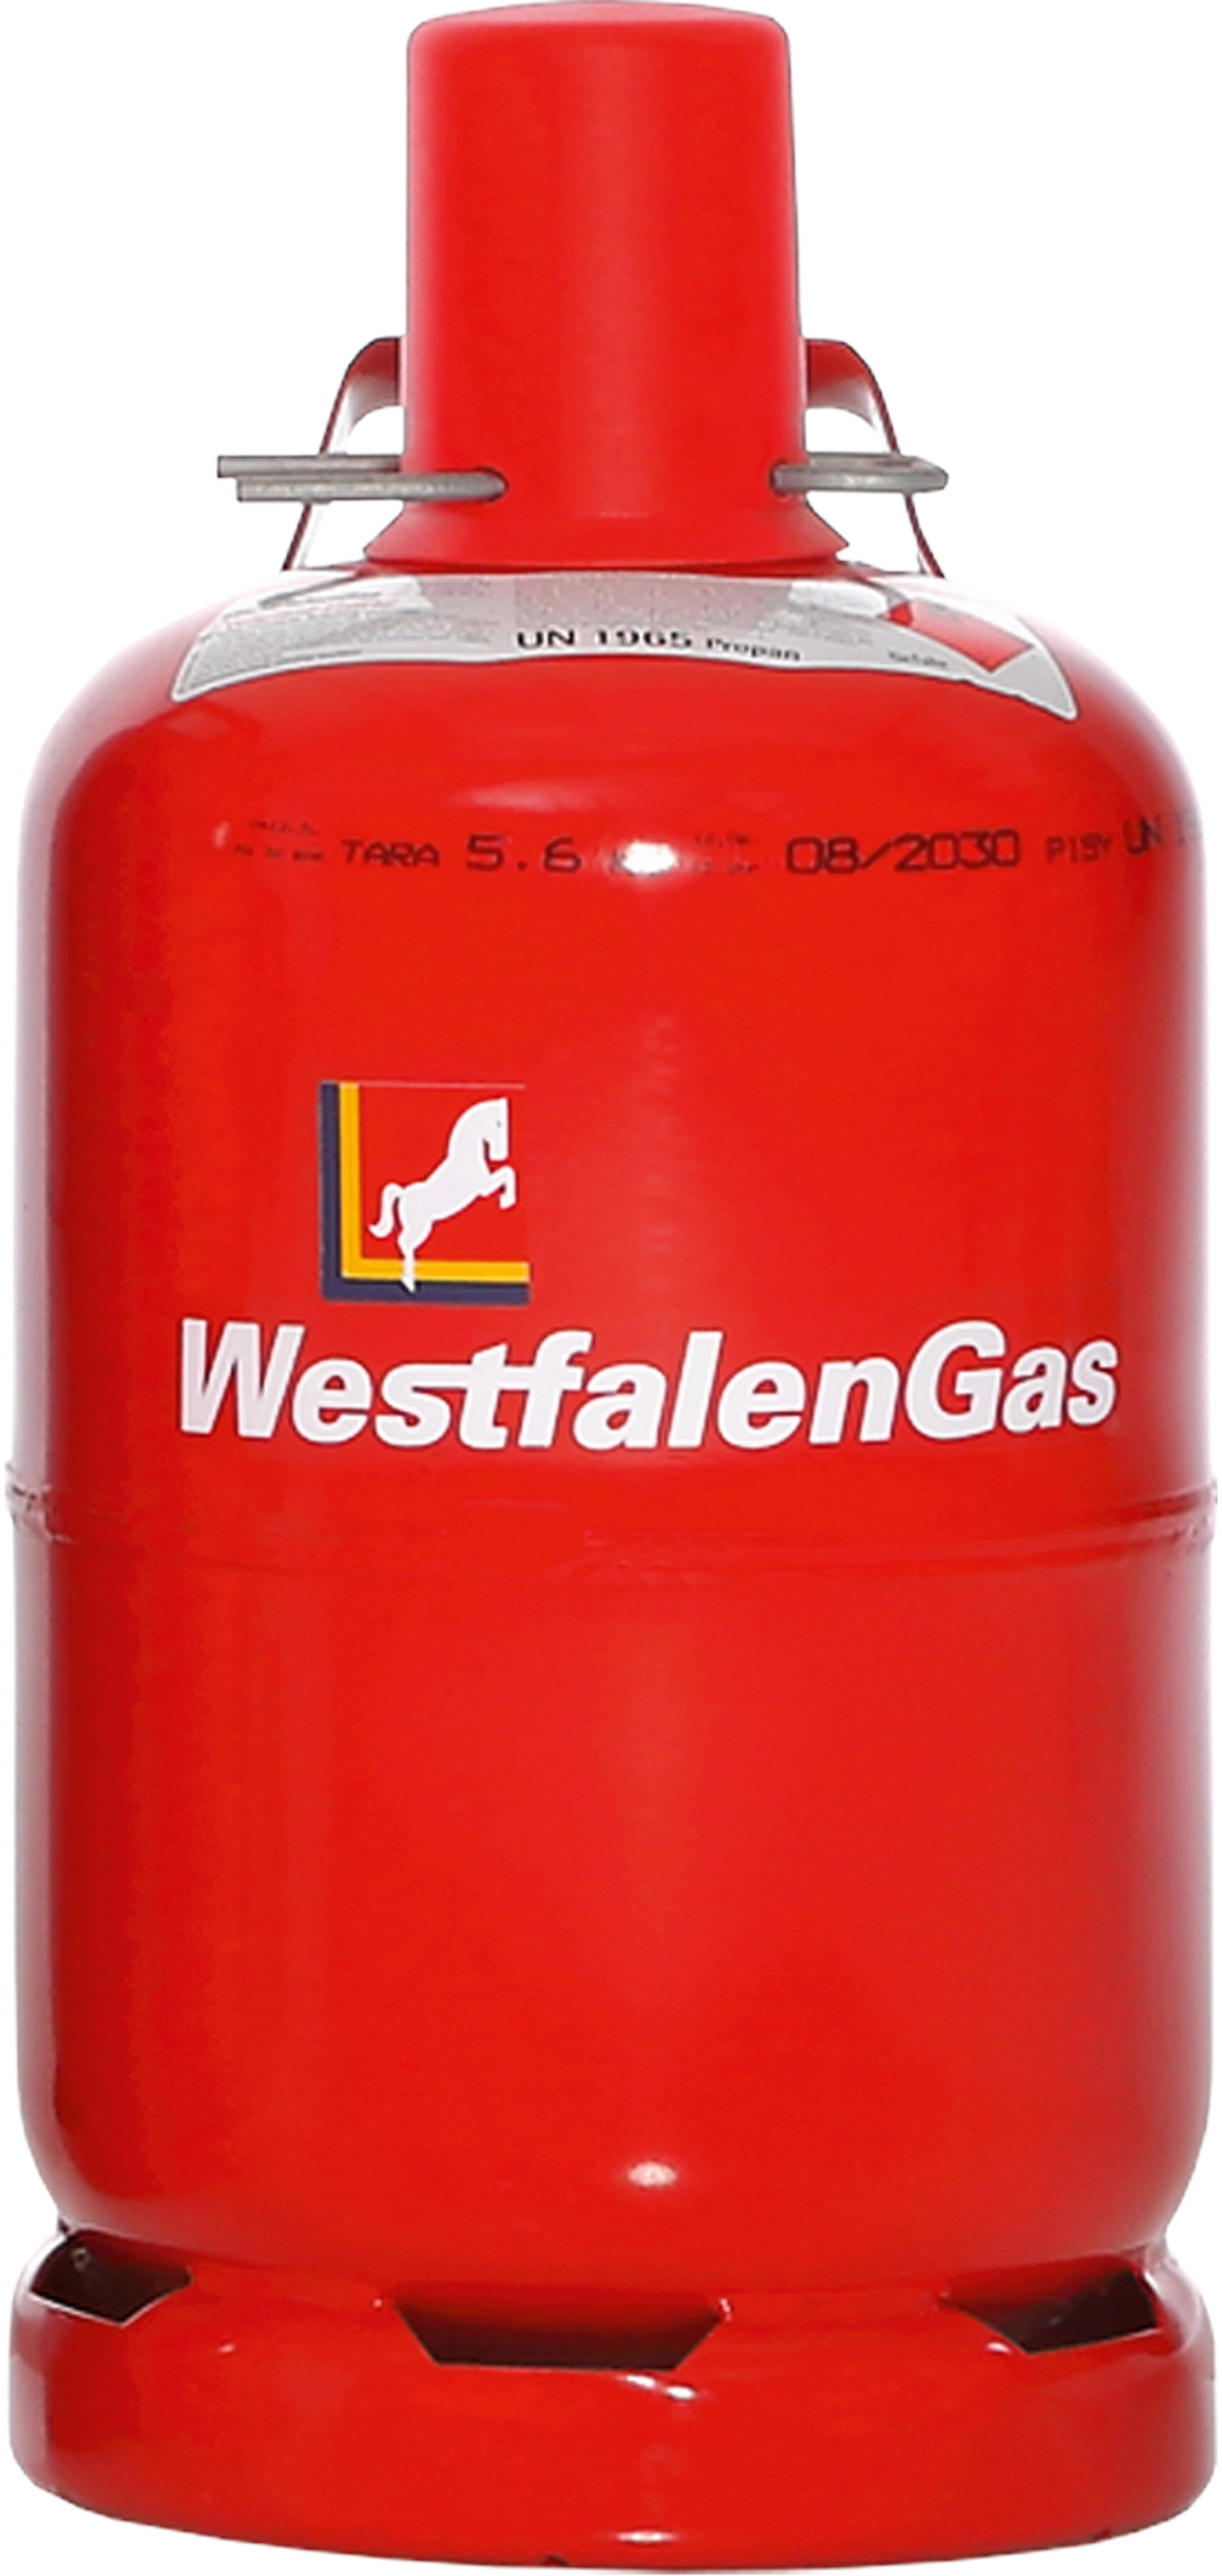 Westfalengas Propan Füllung 5 kg Pfandflasche (nur Füllung, ohne Flasche)  kaufen bei OBI